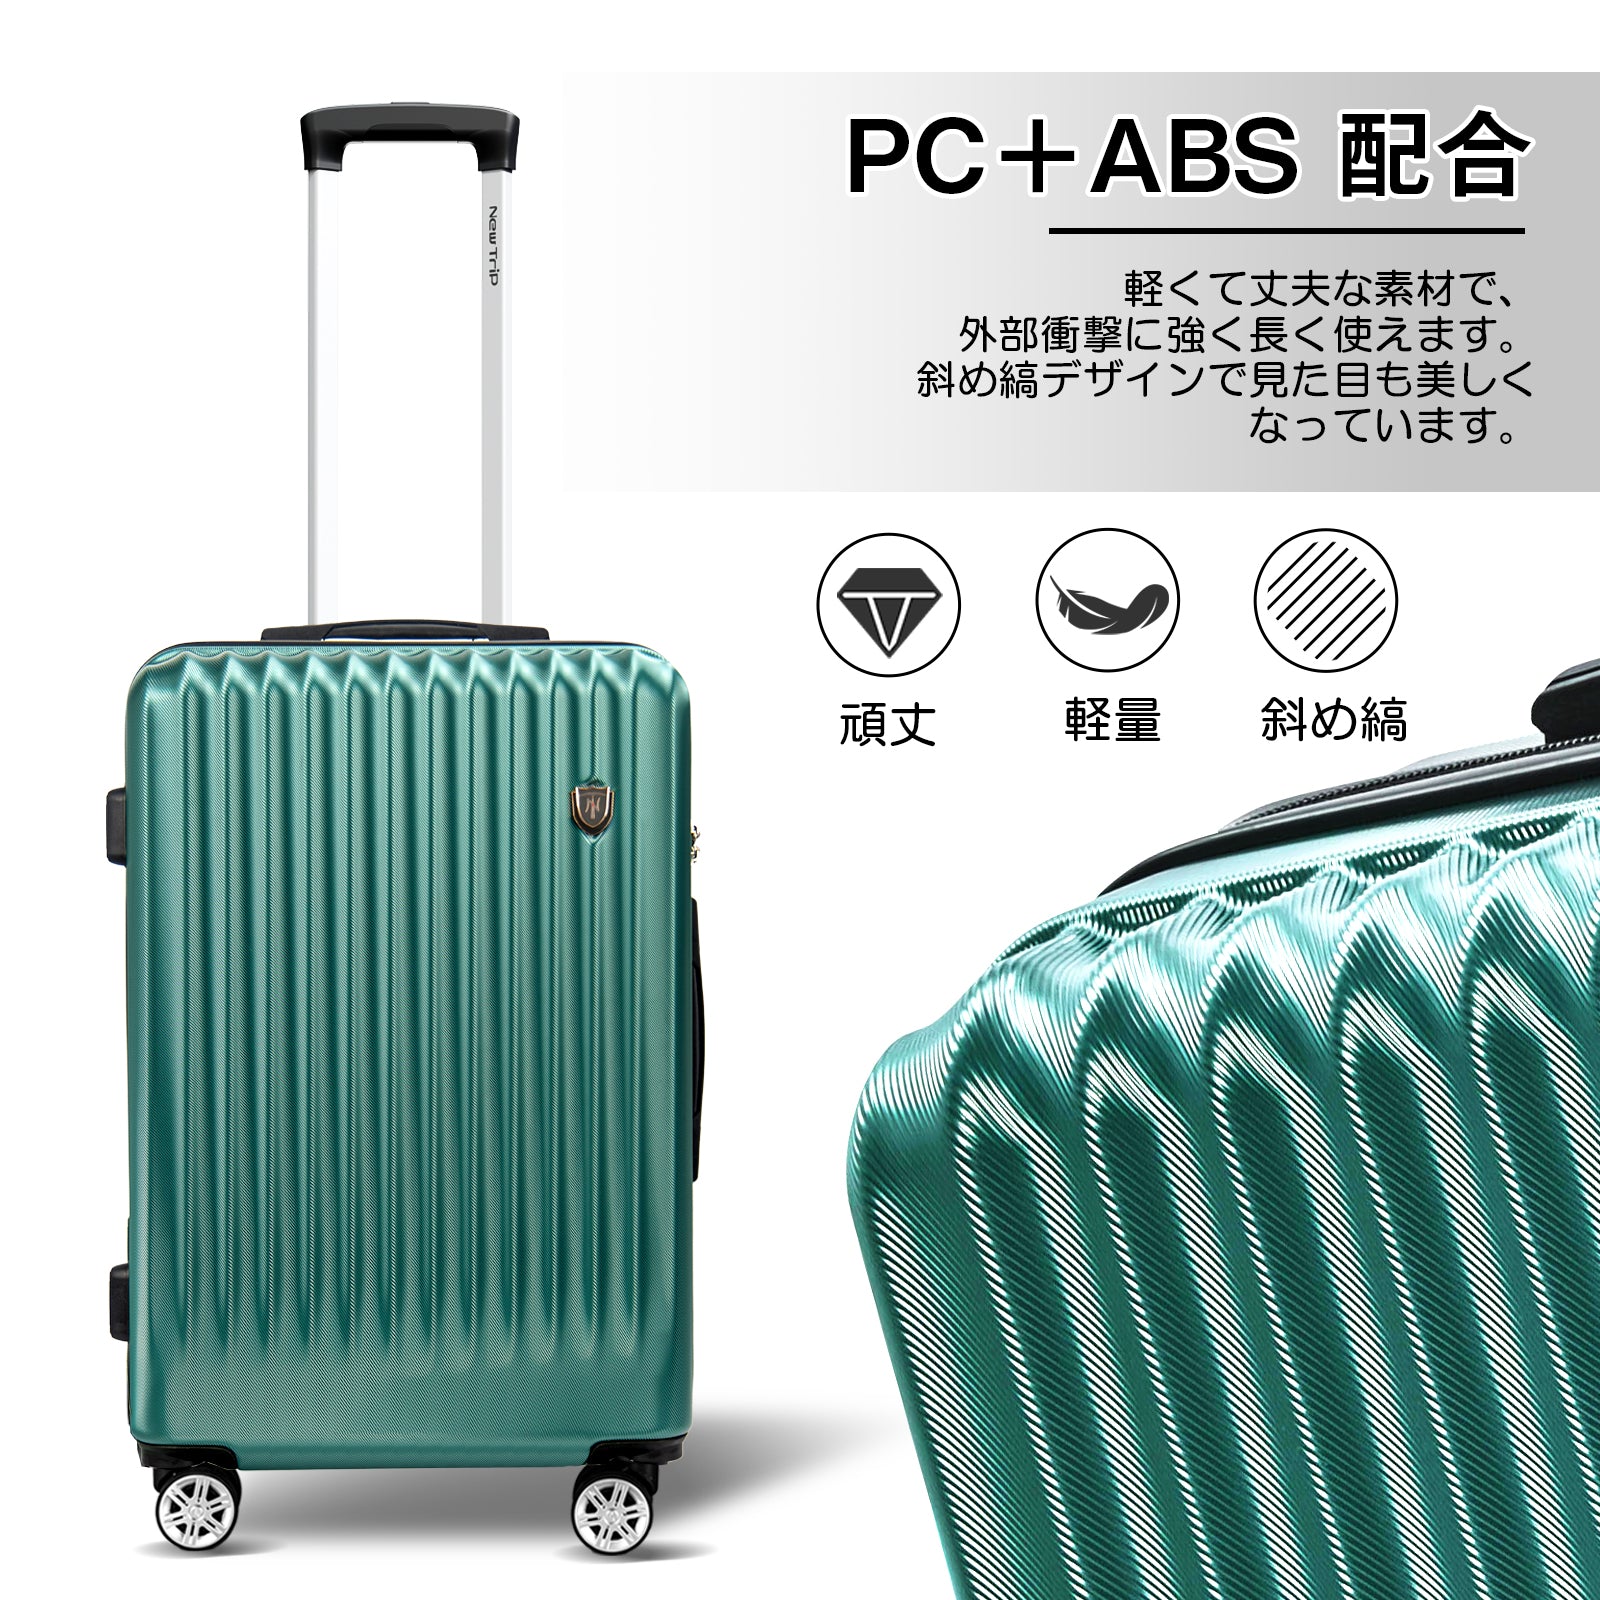 New Trip] スーツケース グリーン S~Lサイズ 40~100L